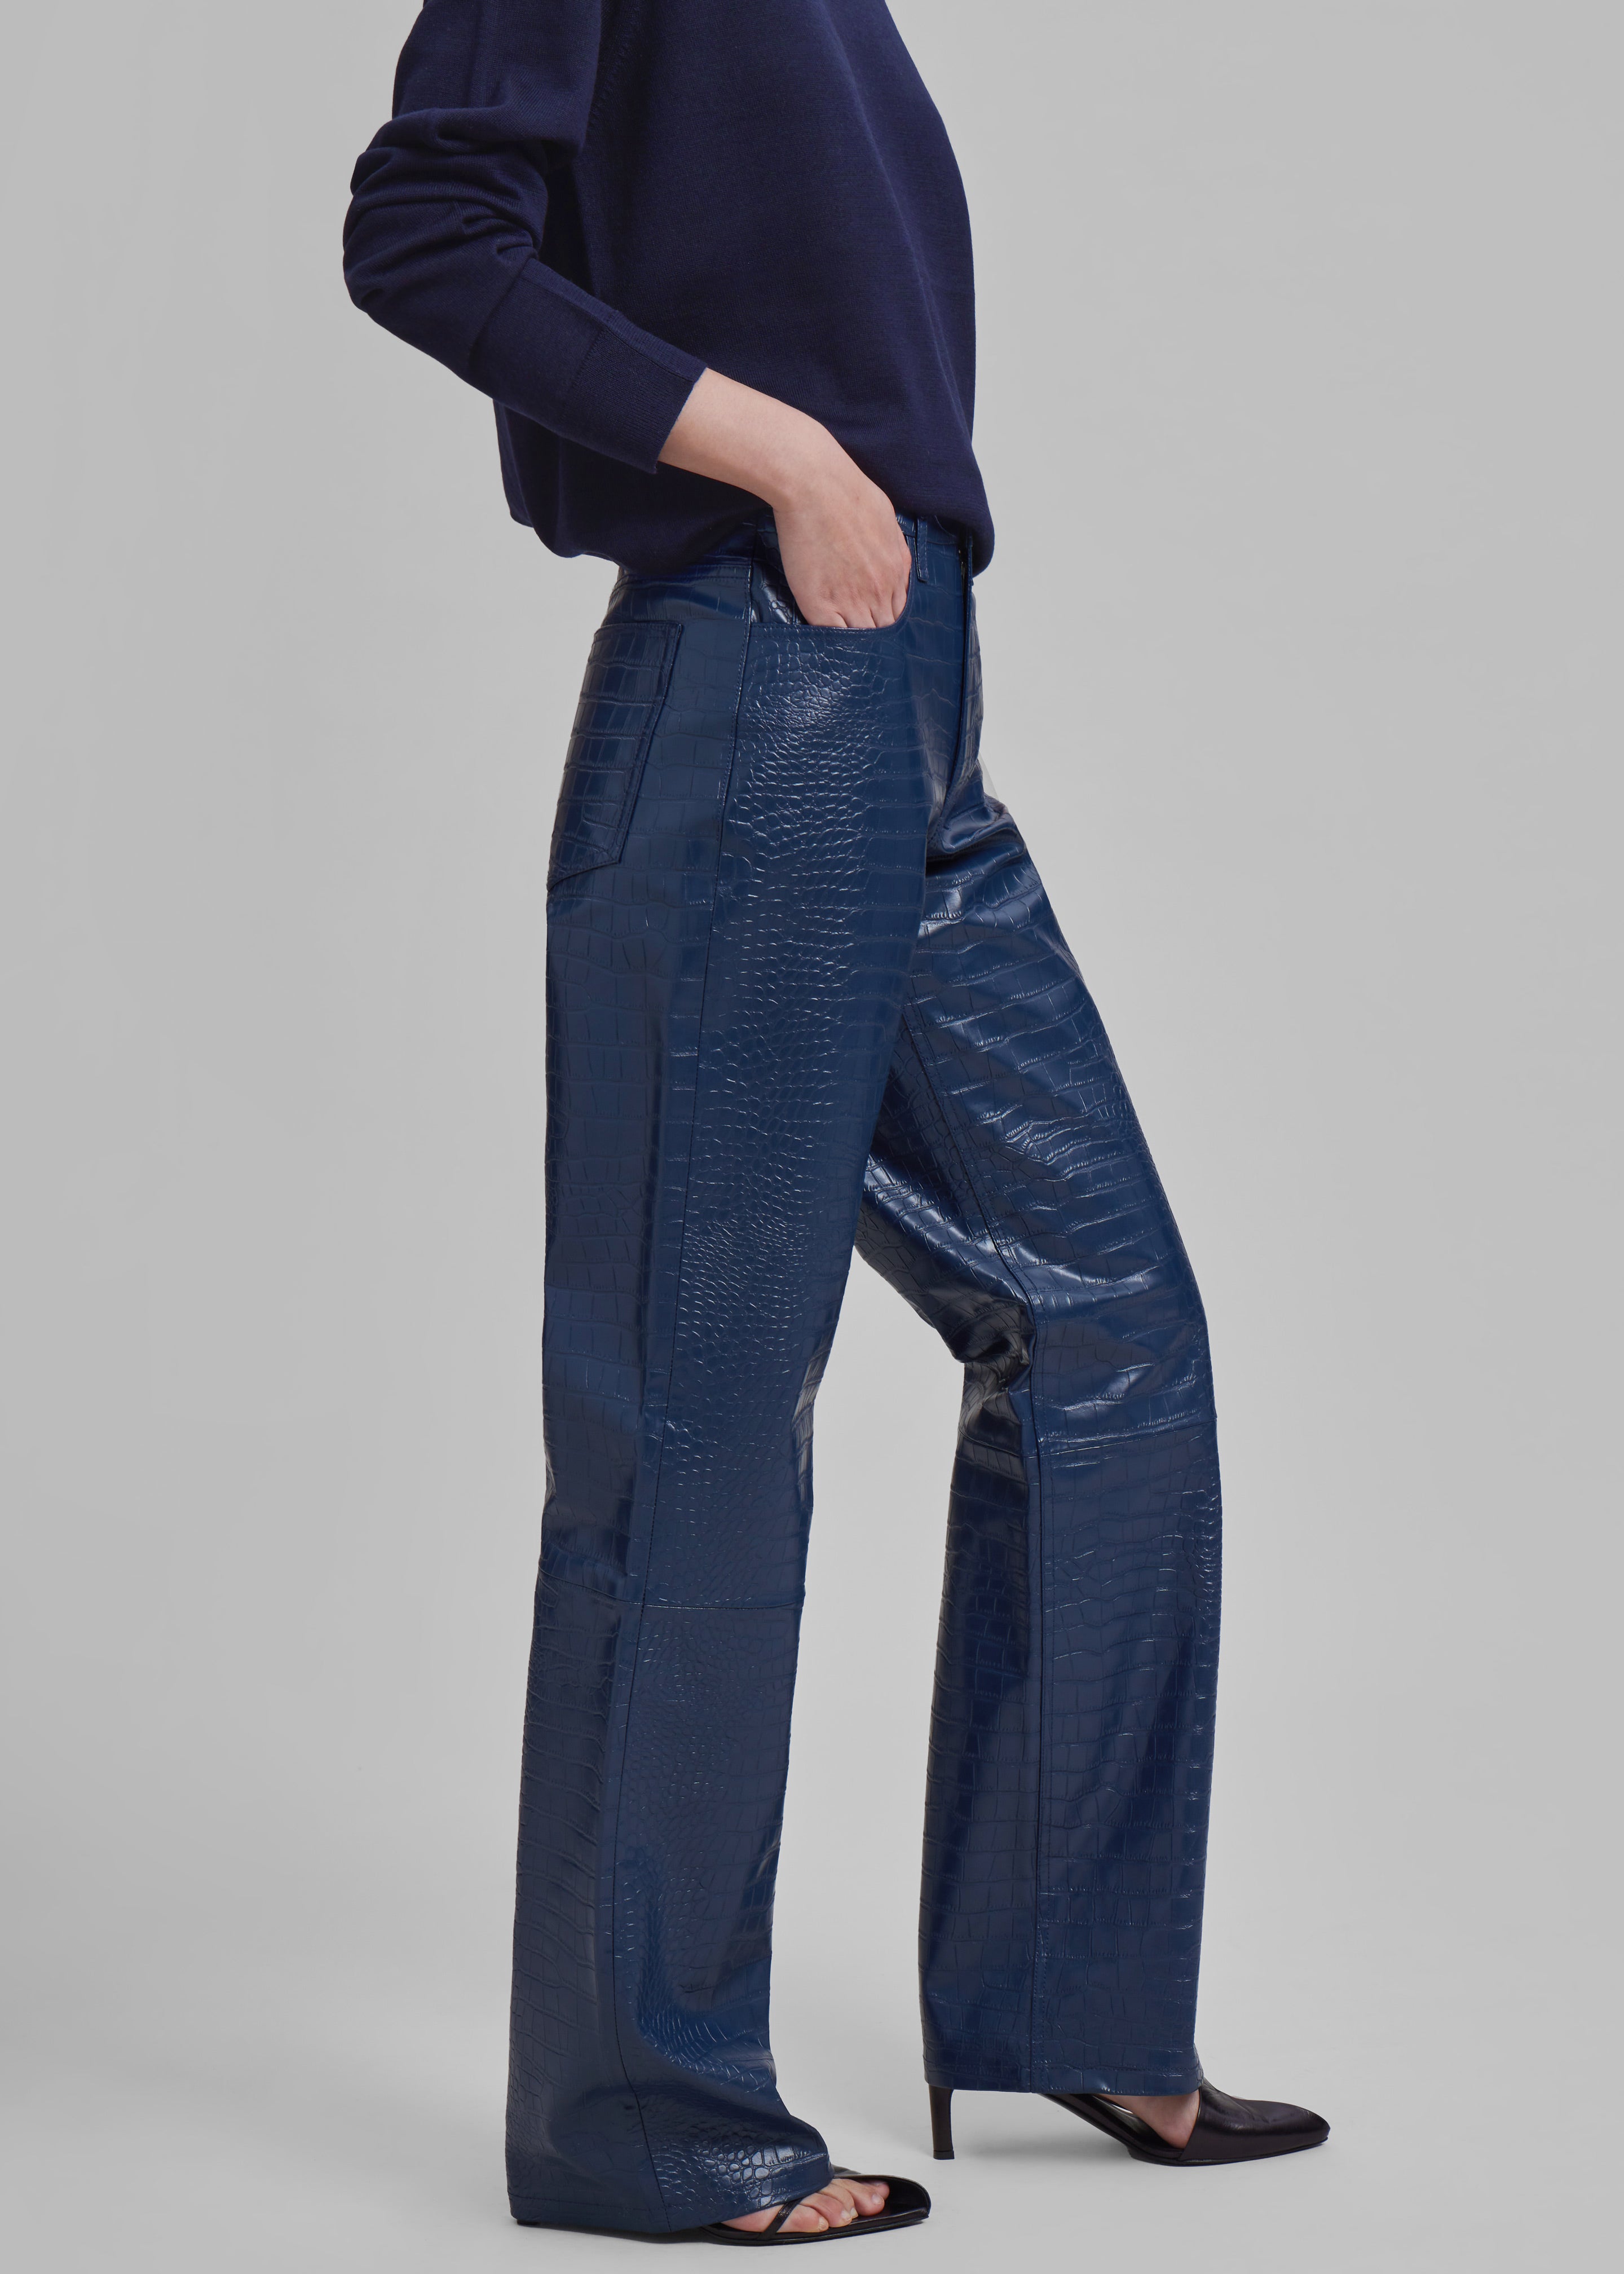 Bonnie Croc-Effect Pants - Blue - 2